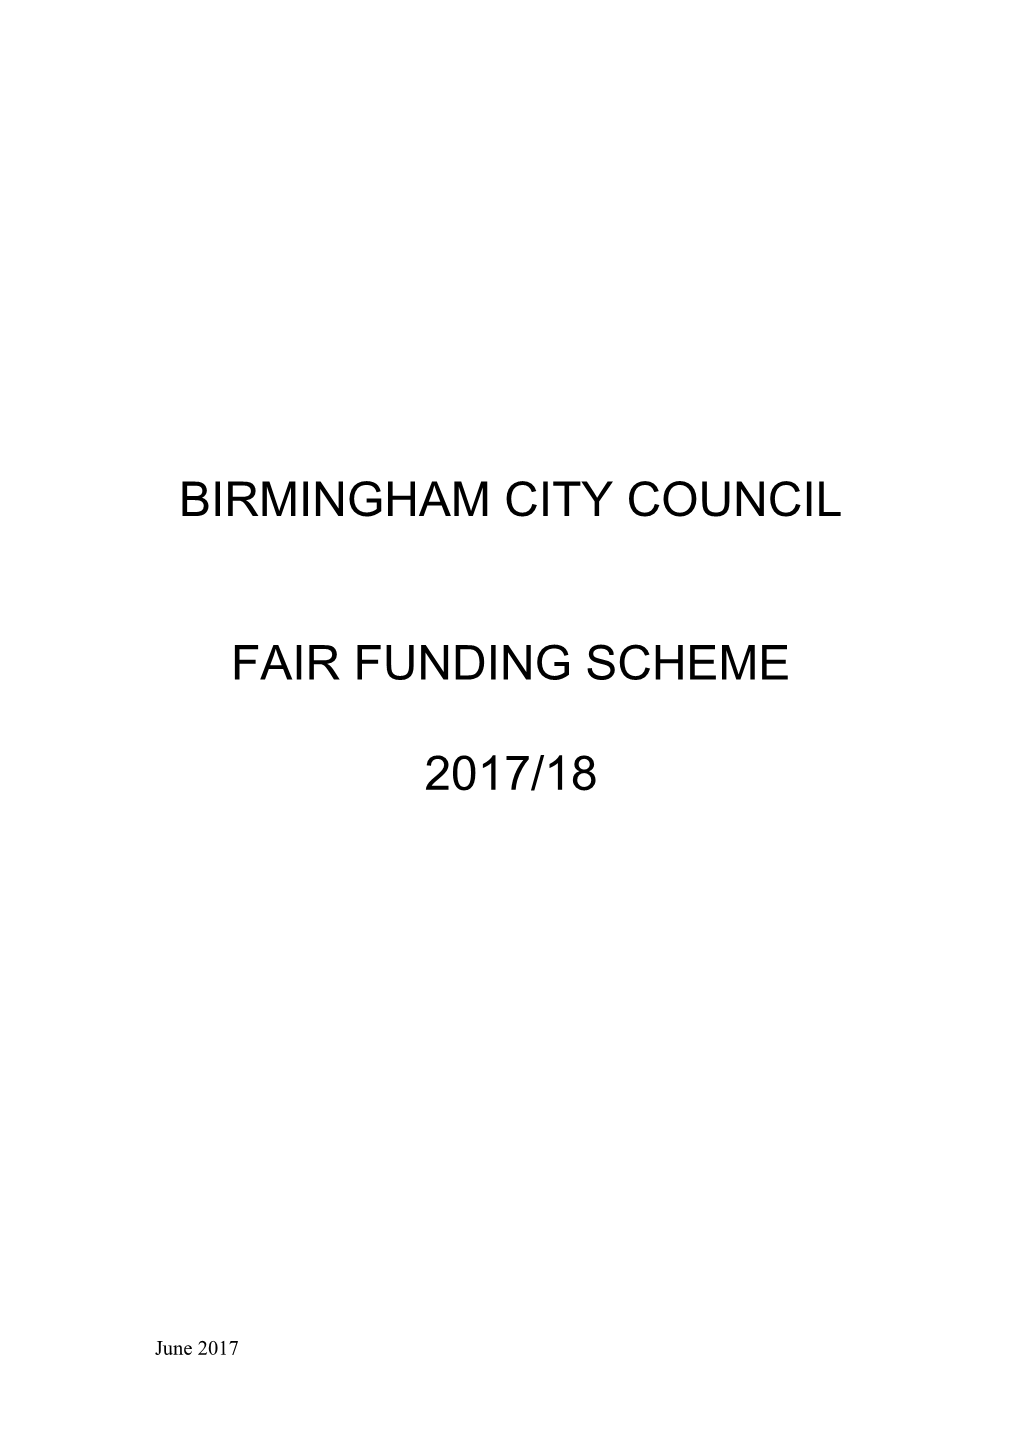 Birmingham City Council s3